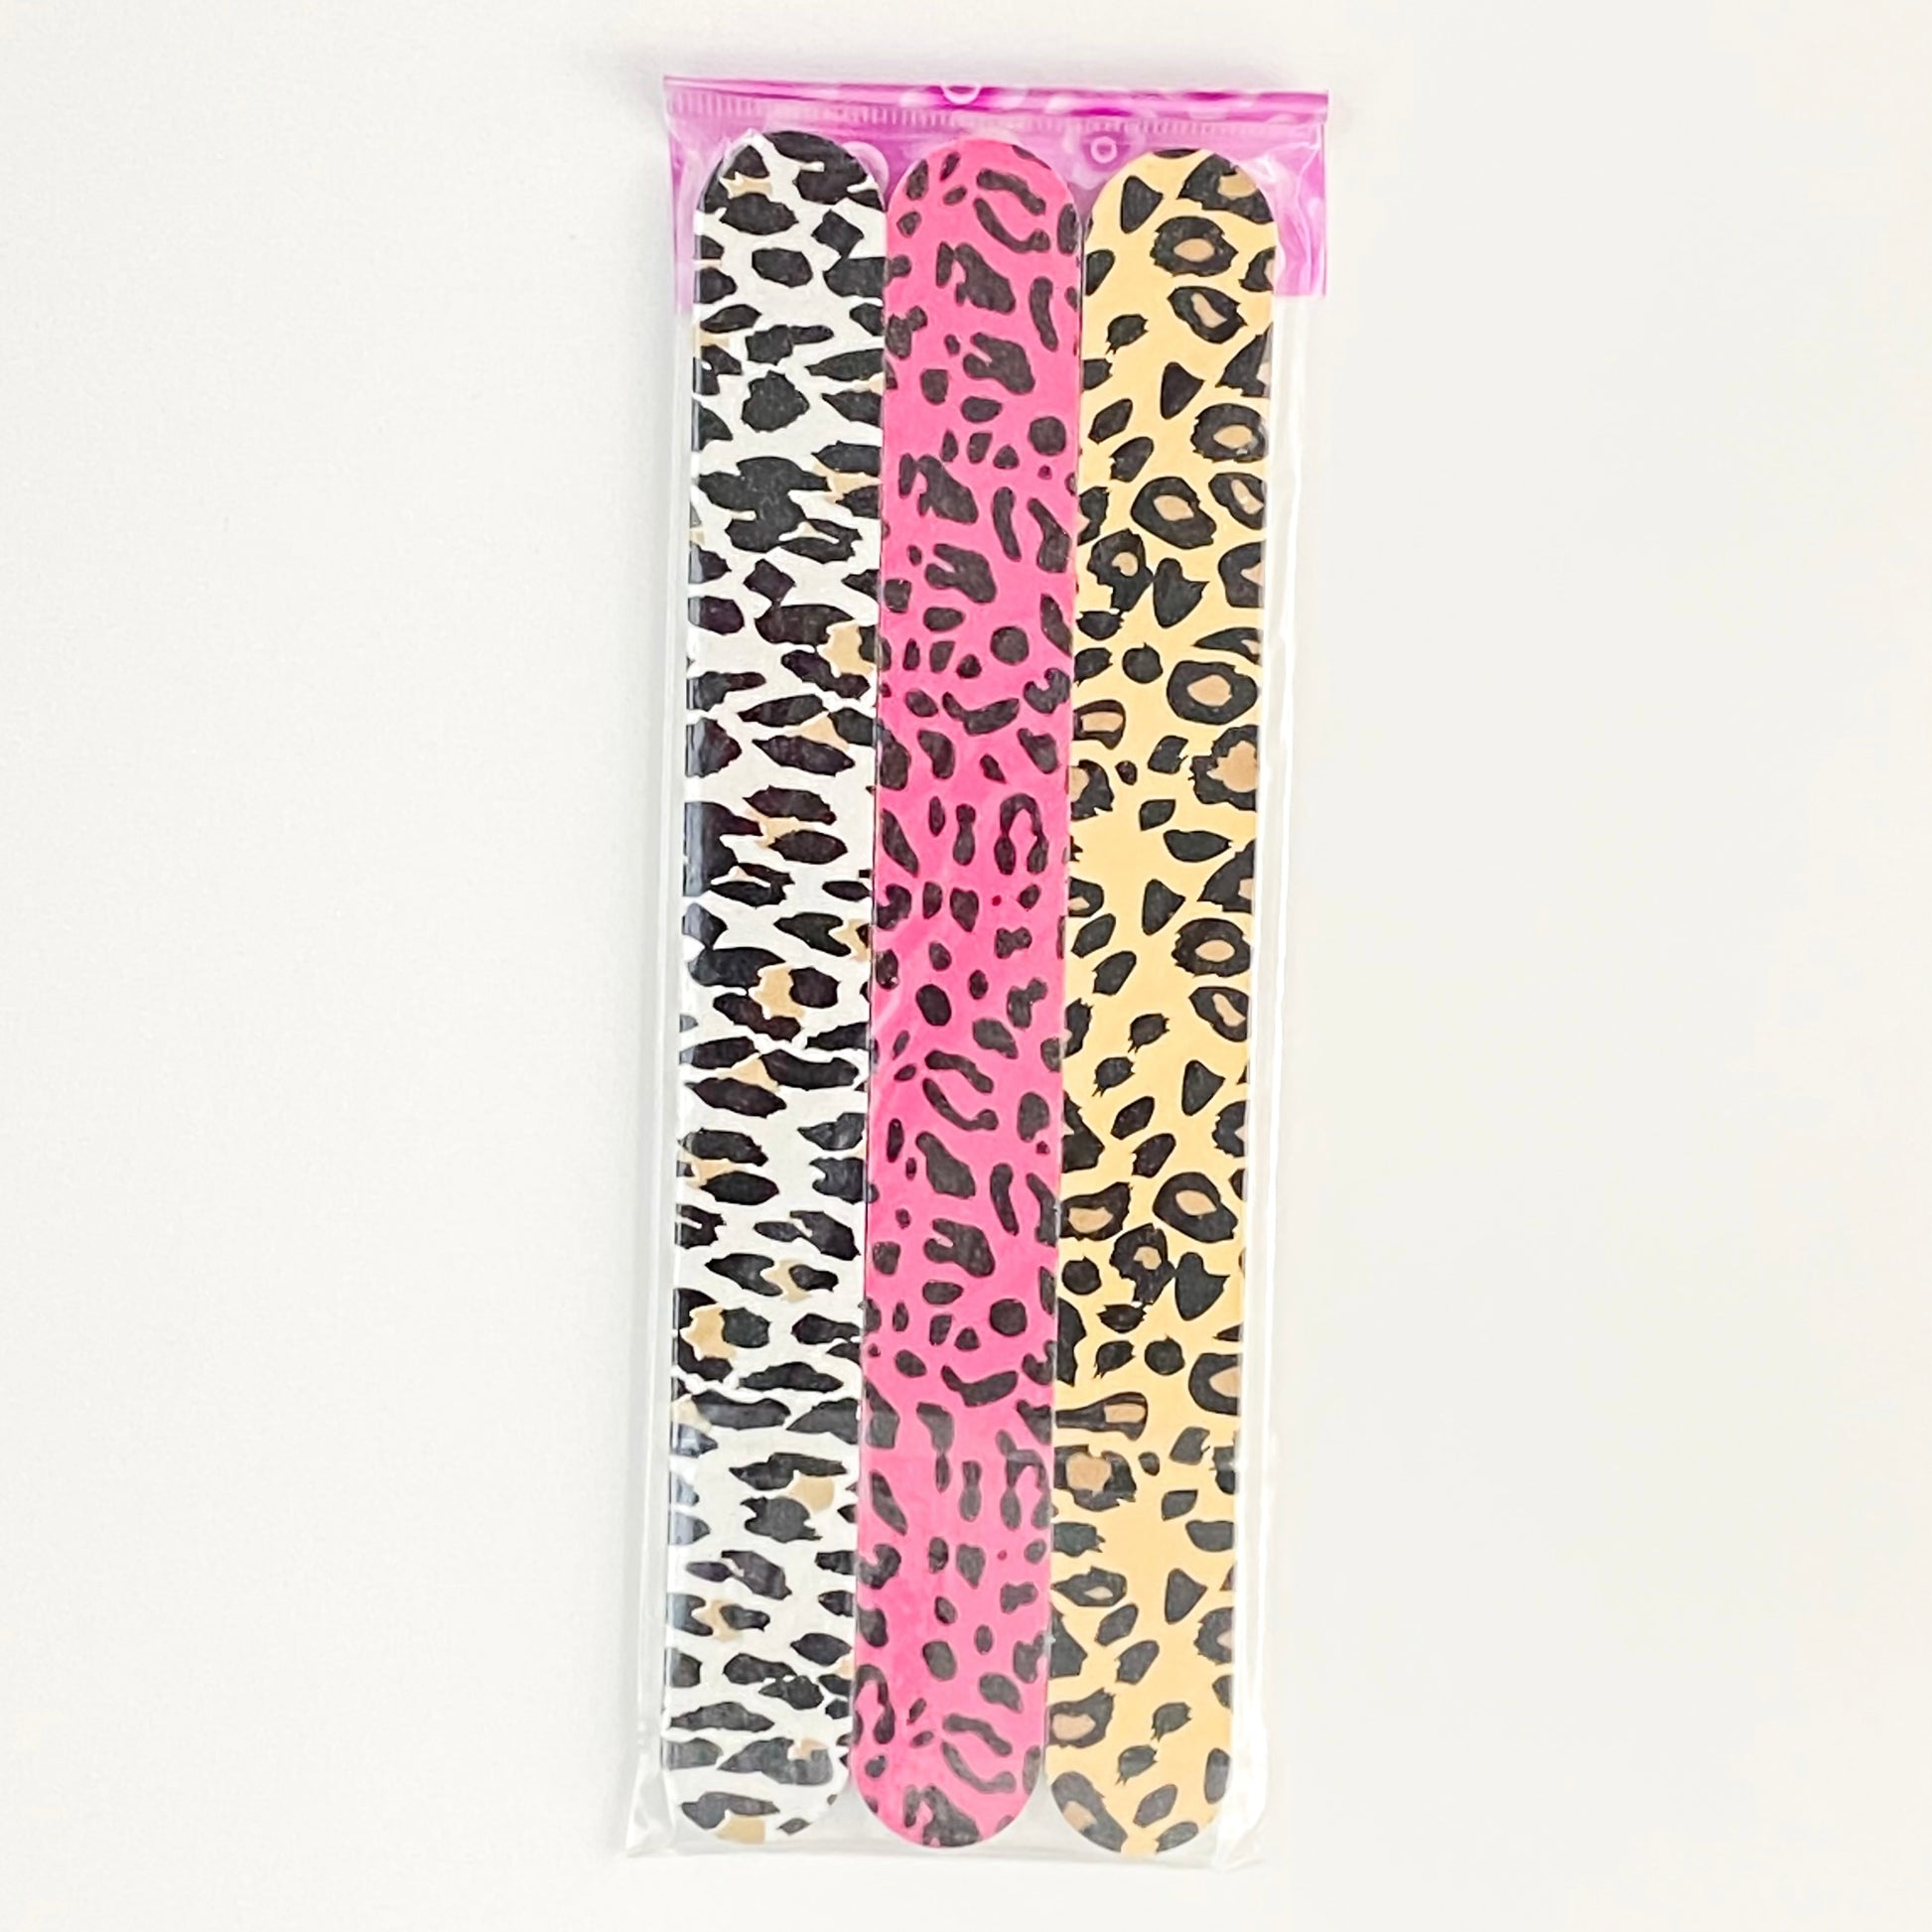 photo of nail file set of 3 white cheetah, pink cheetah and classic tan cheetah